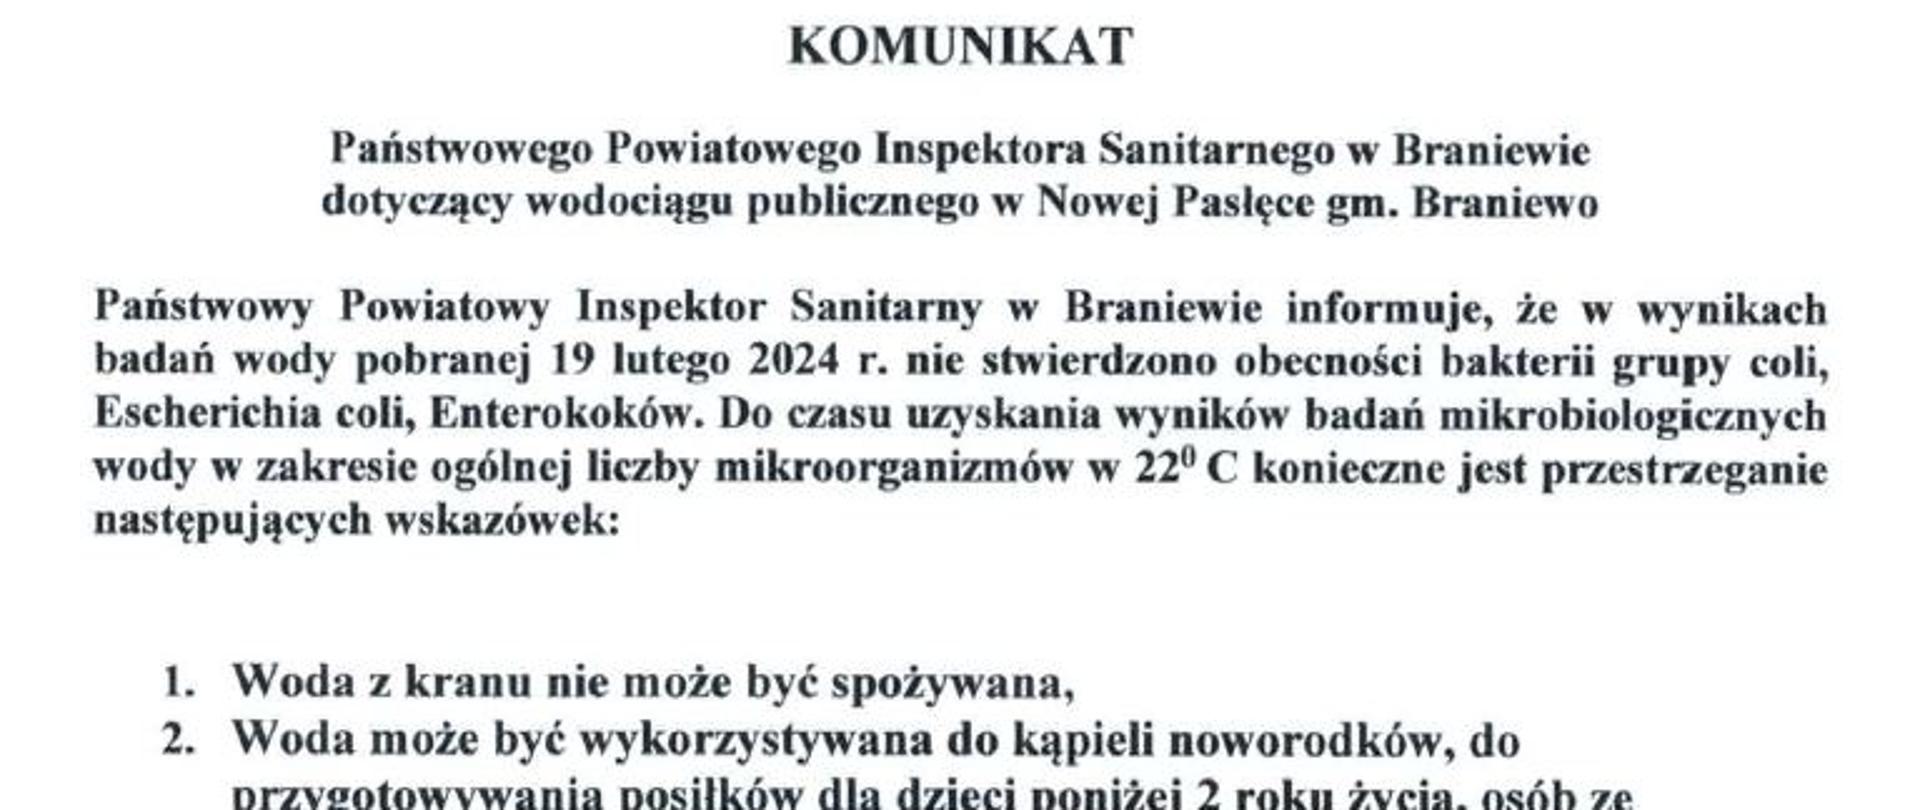 Komunikat Powiatowego Państwowego Inspektora Sanitarnego w Braniewie dotyczący wodociągu publicznego w Nowej Pasłęce gm. Braniewo